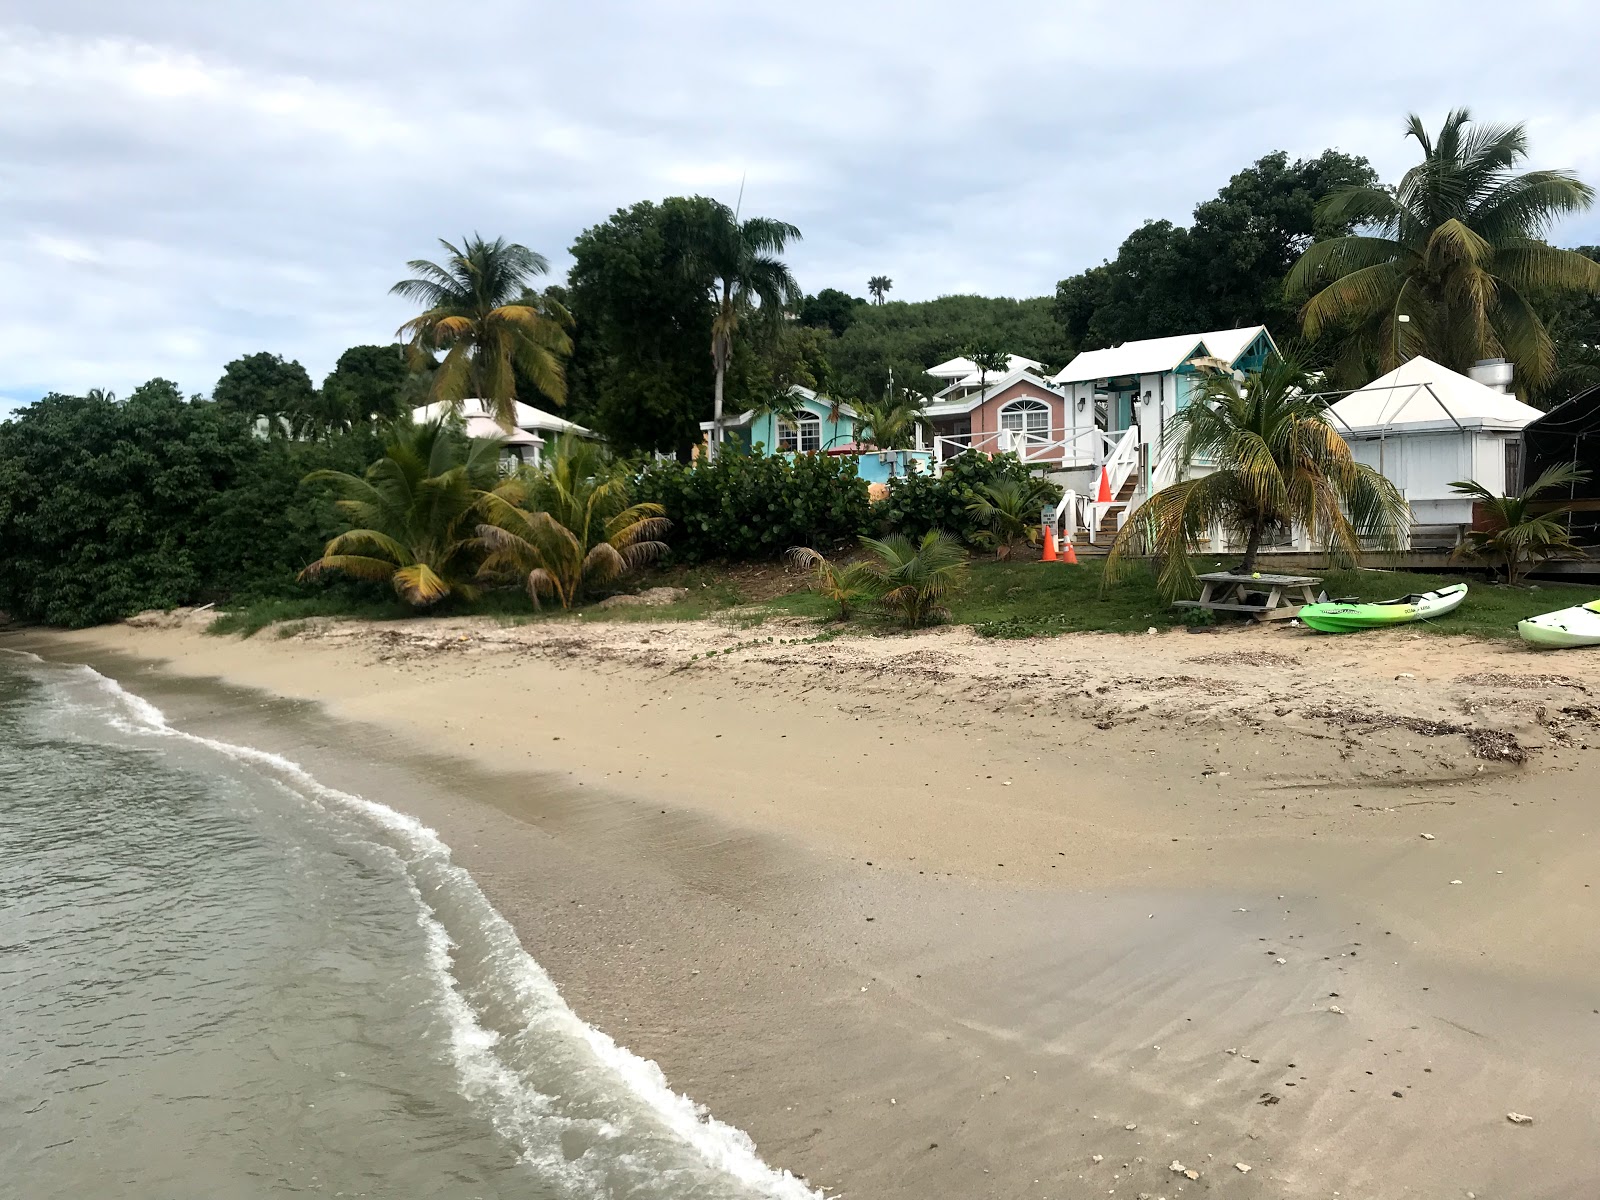 St. Croix Chenay beach'in fotoğrafı - rahatlamayı sevenler arasında popüler bir yer